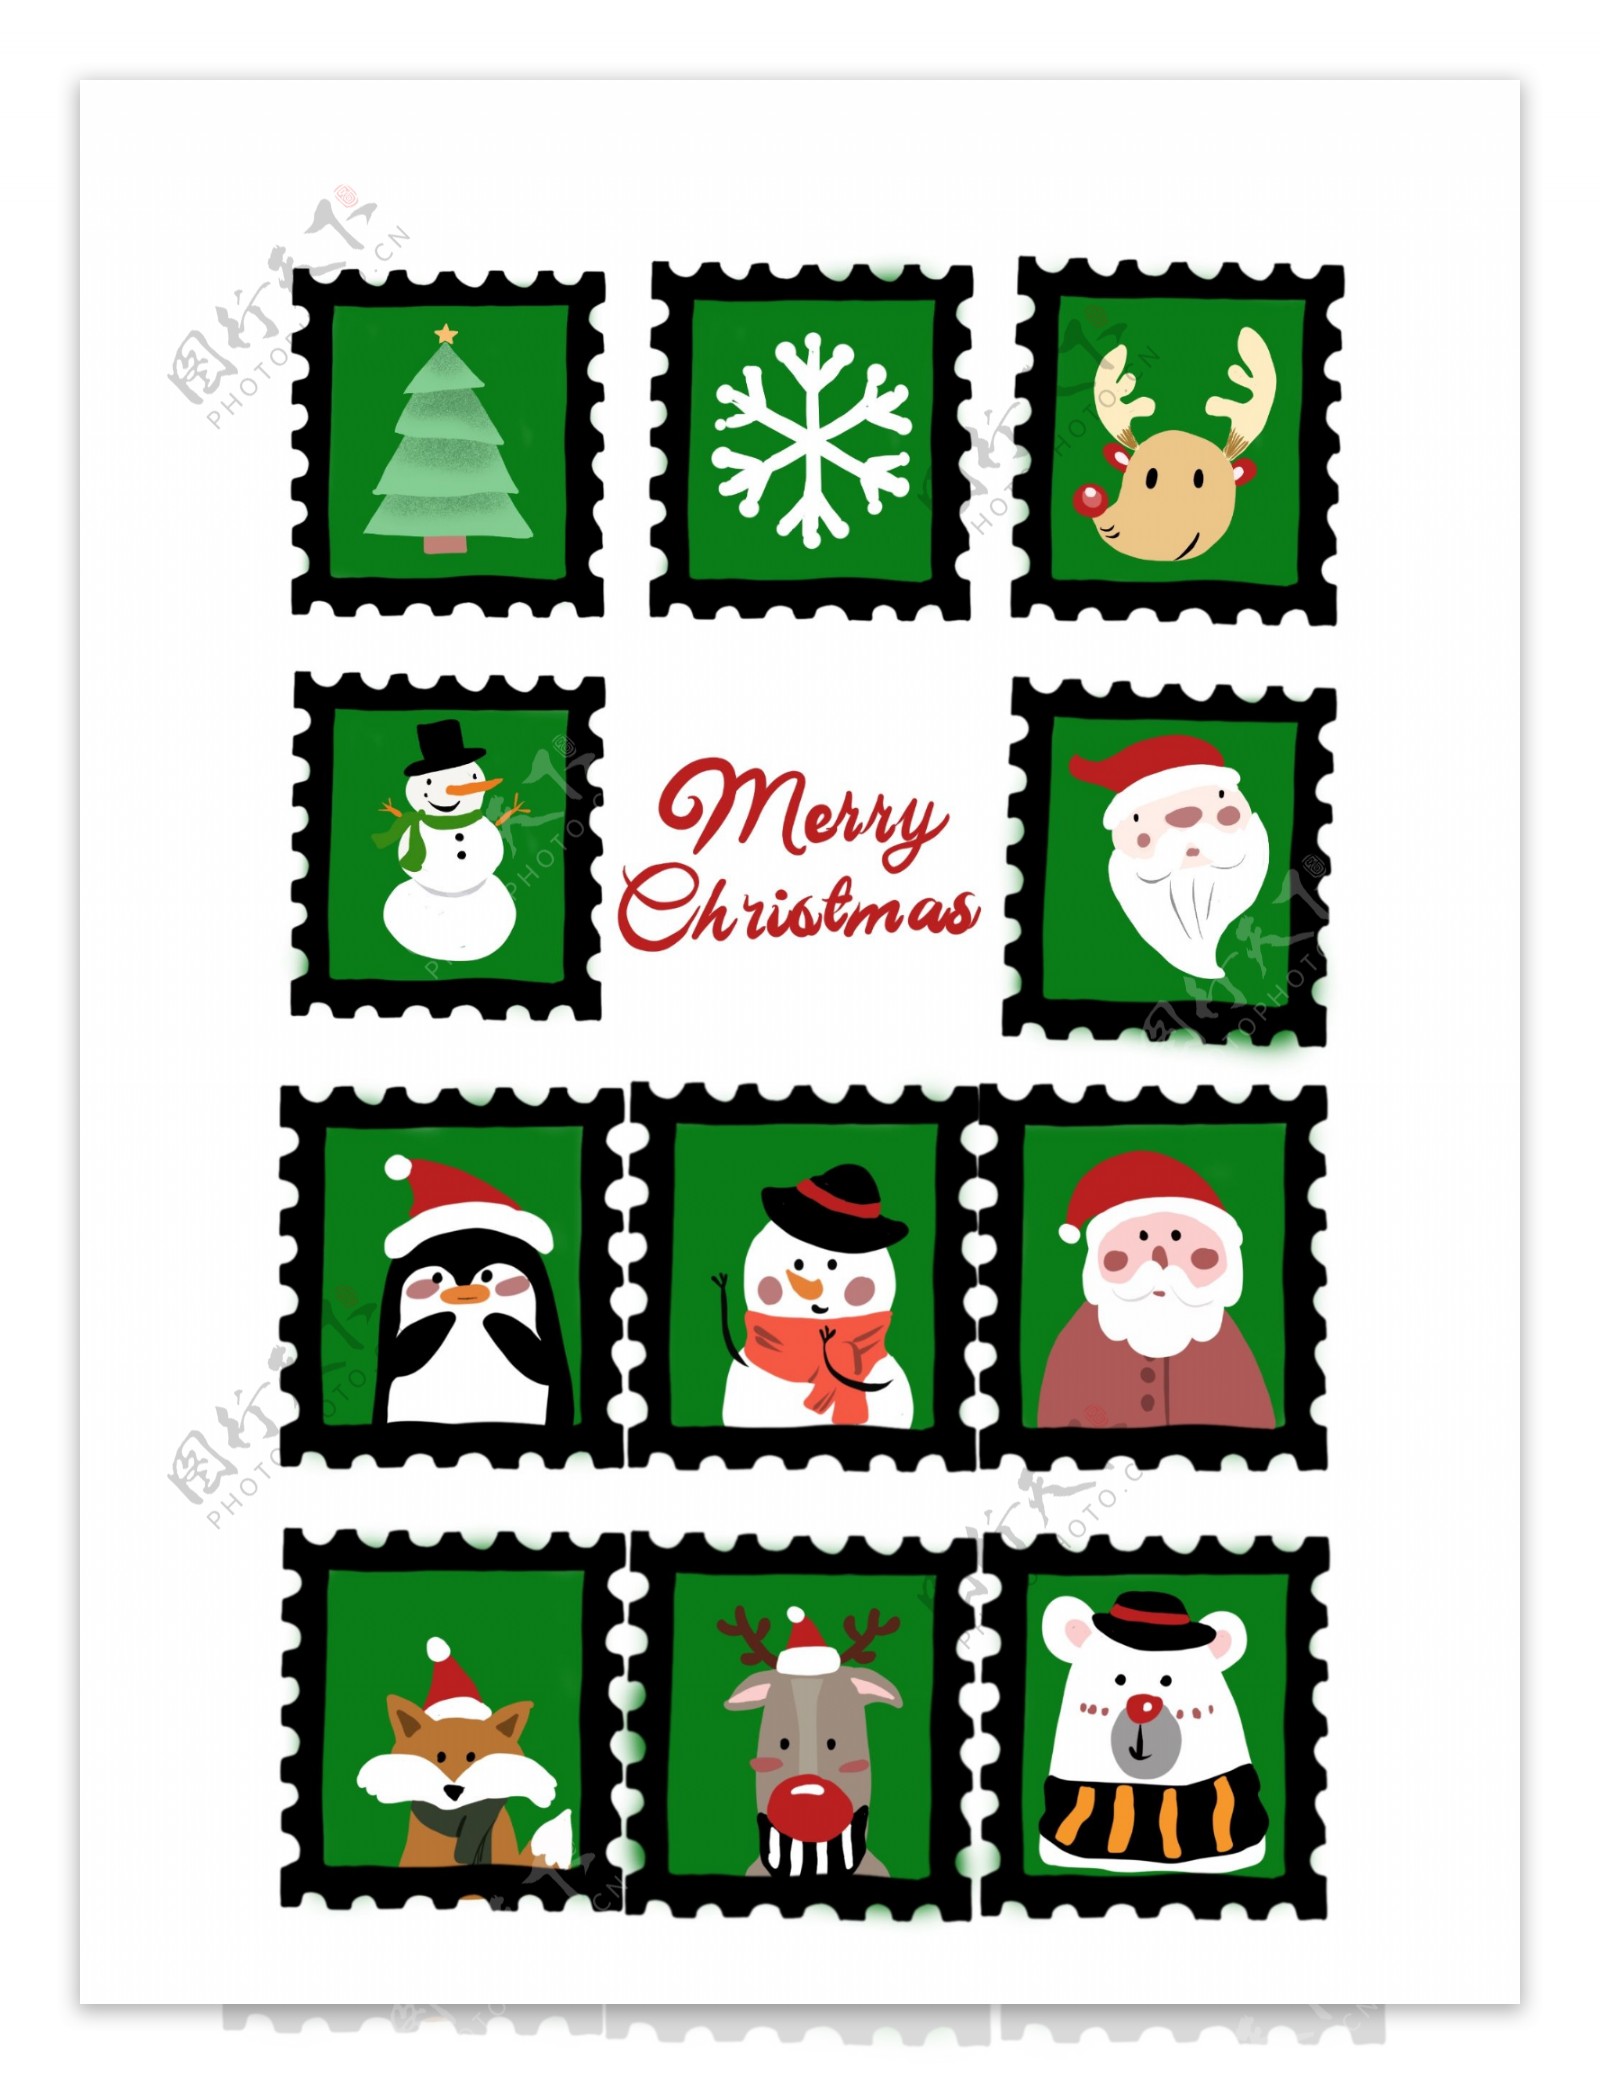 圣诞节邮票圣诞老人元素手绘贴纸